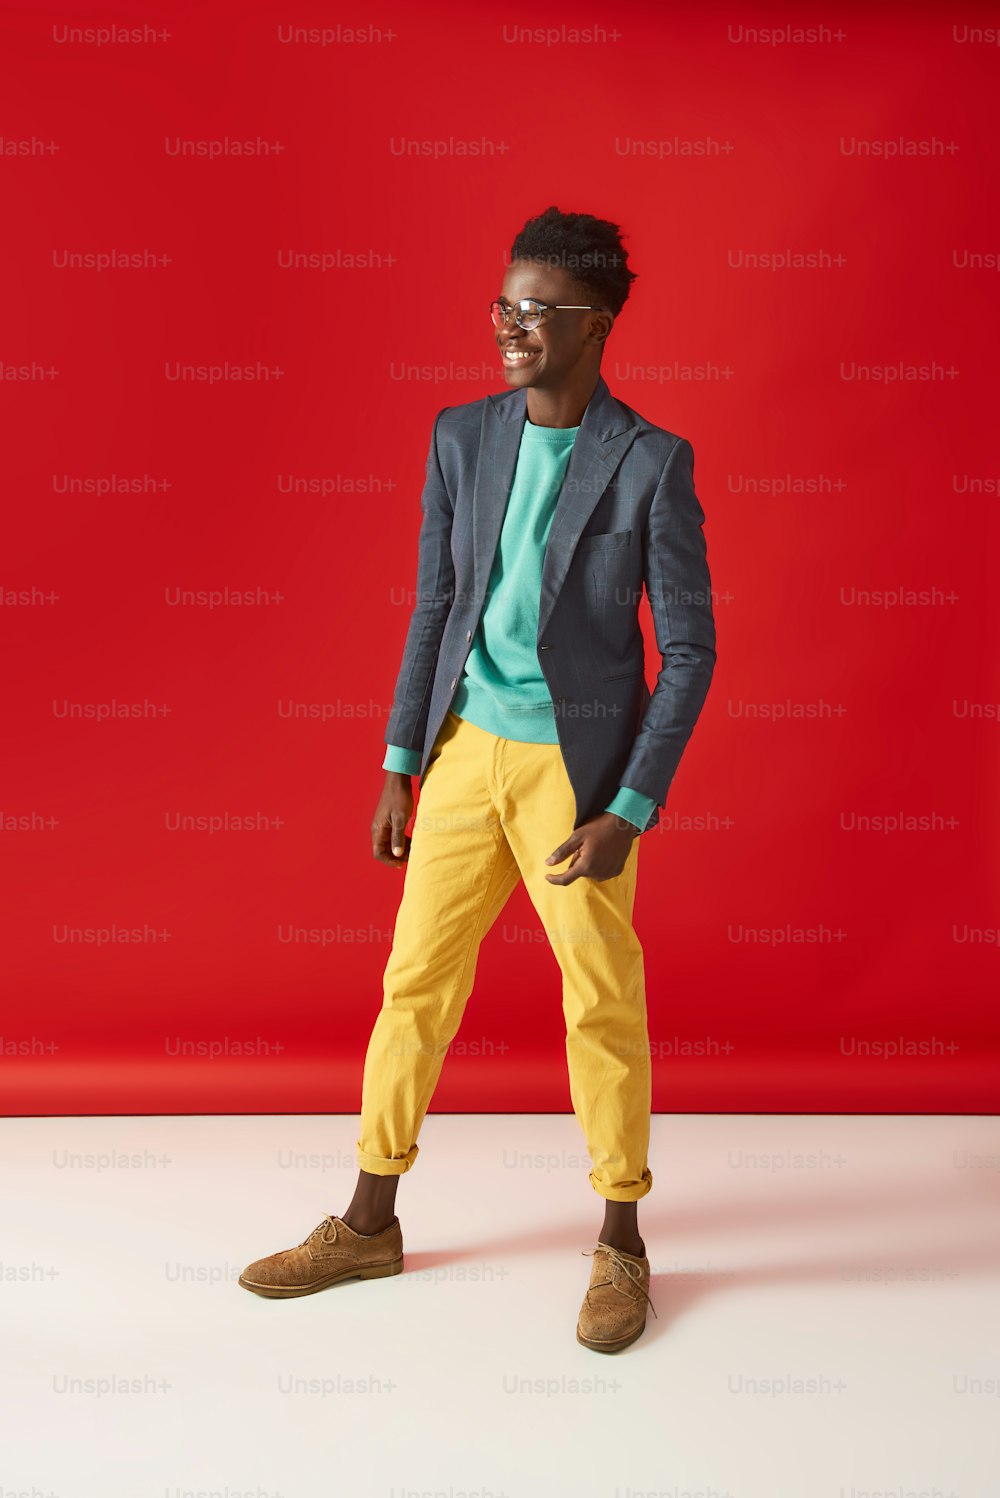 Retrato de corpo inteiro do jovem Aframerican em jaqueta e óculos. Ele está desviando o olhar e sorrindo